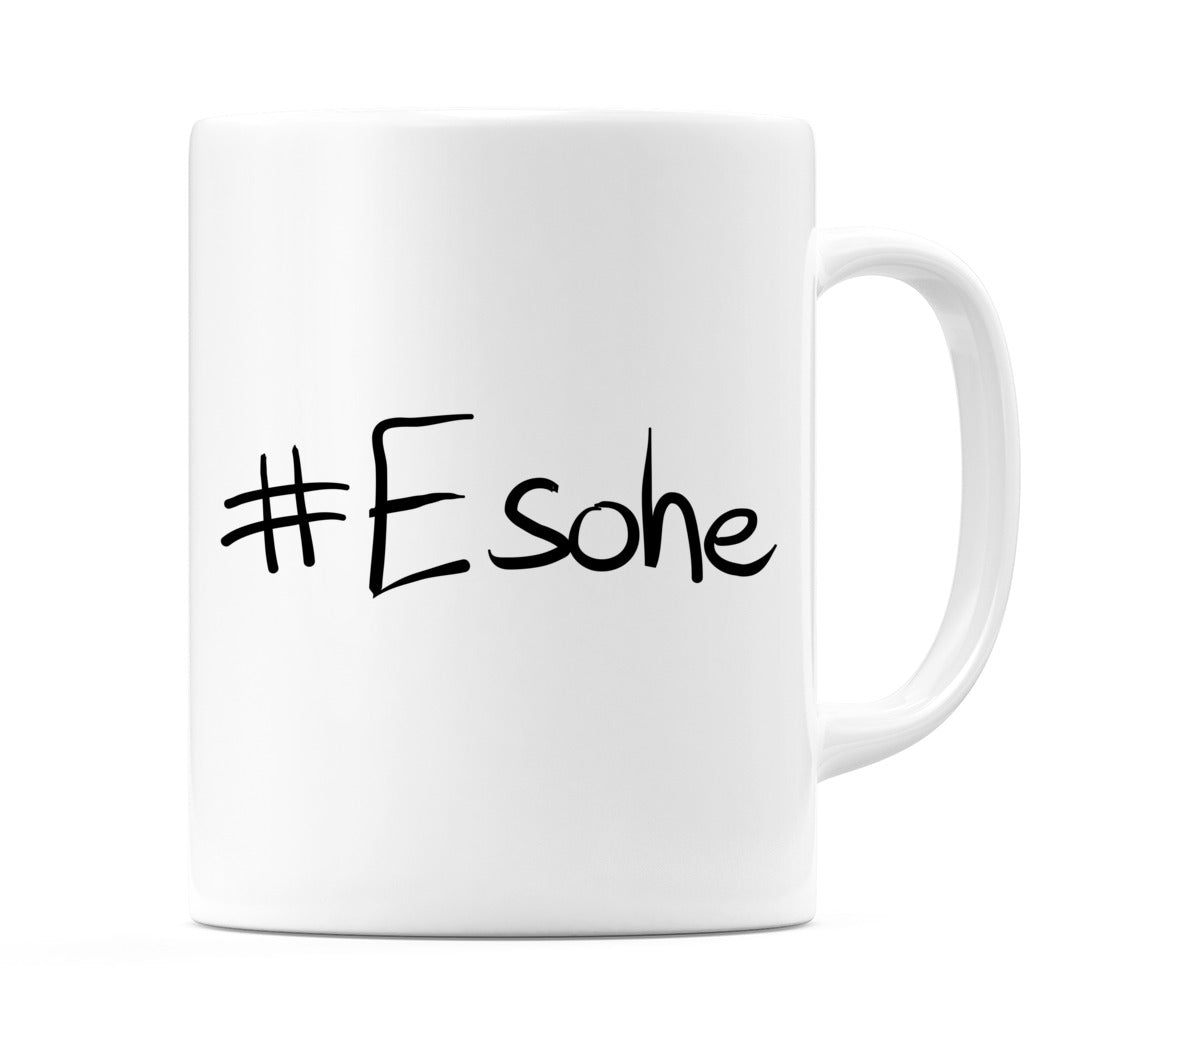 #Esohe Mug